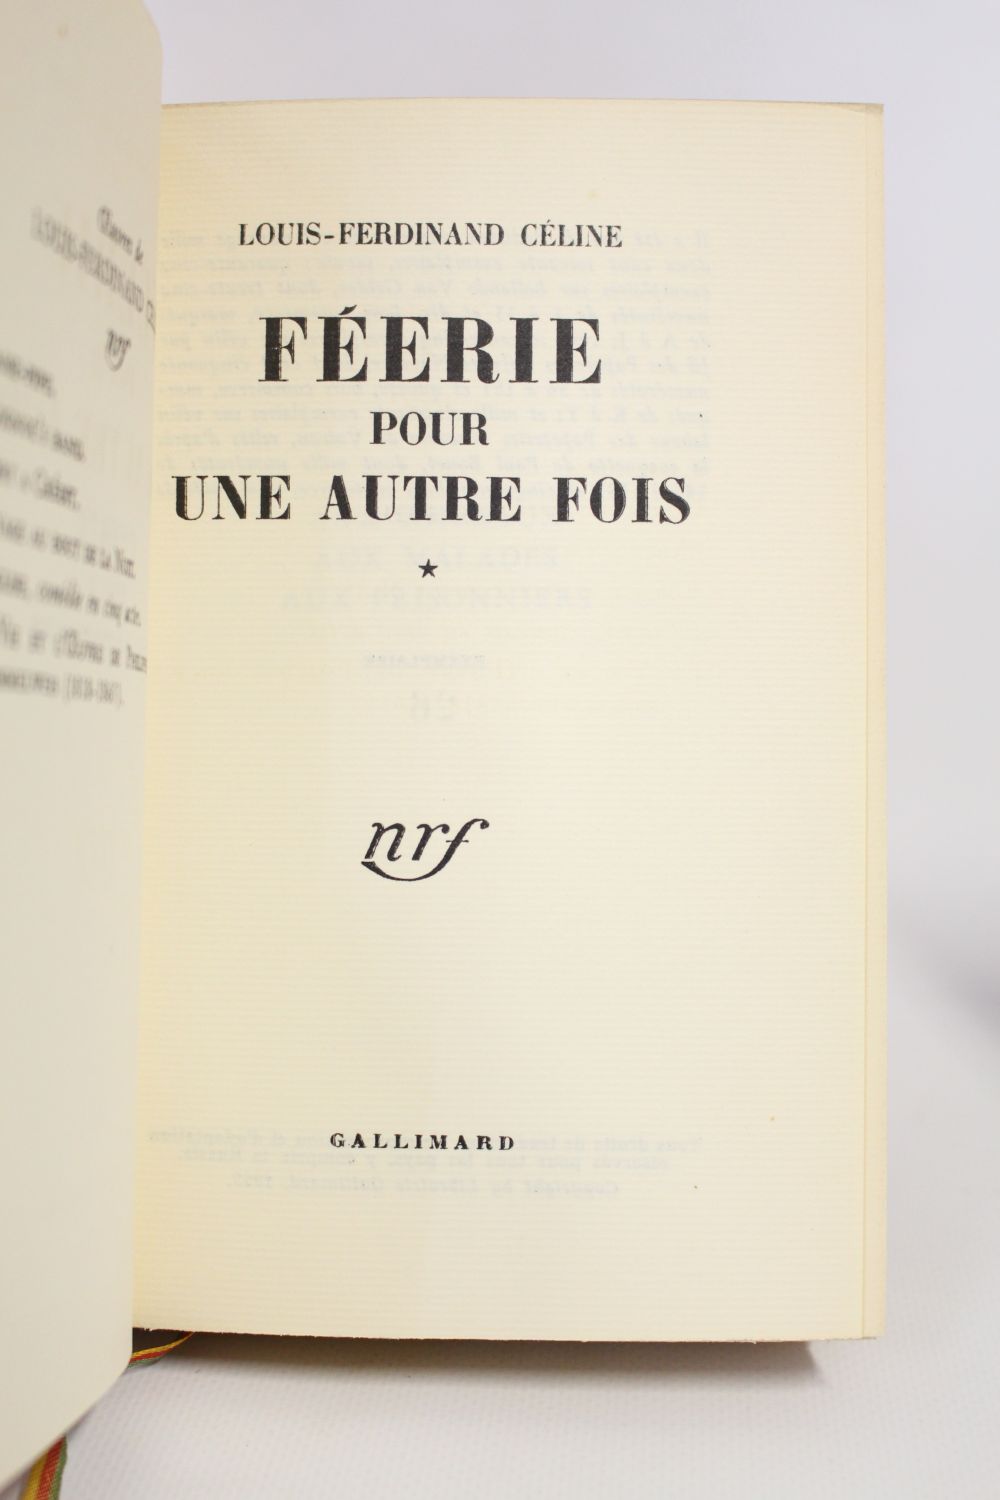 h-3000-celine_louis-ferdinand_feerie-pour-une-autre-fois-i-feerie-pour-une-autre-fois-ii-normance_1952_edition-originale_tirage-de-tete_6_60085.jpg